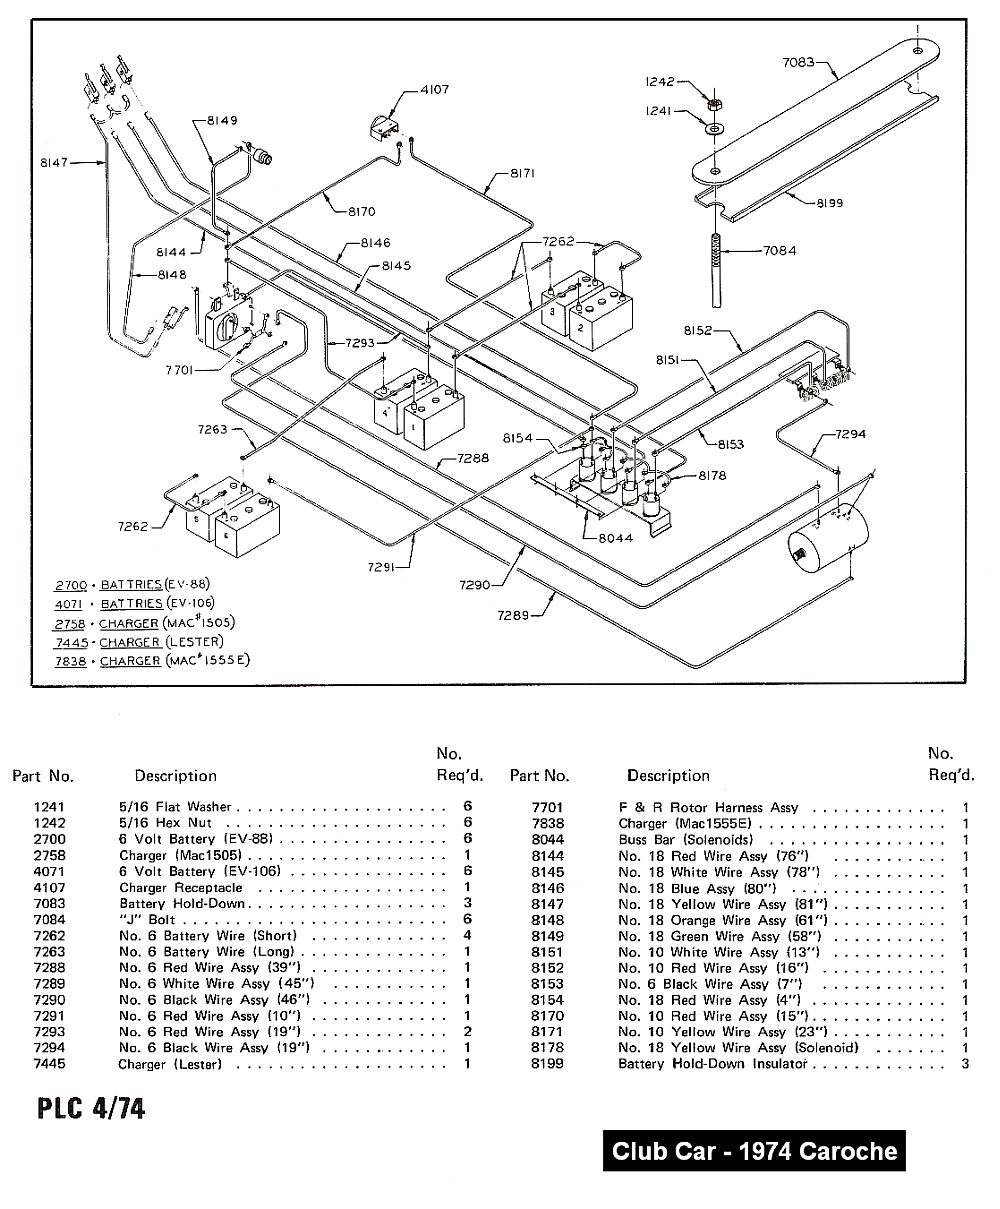 1992 club car carryall wiring diagram